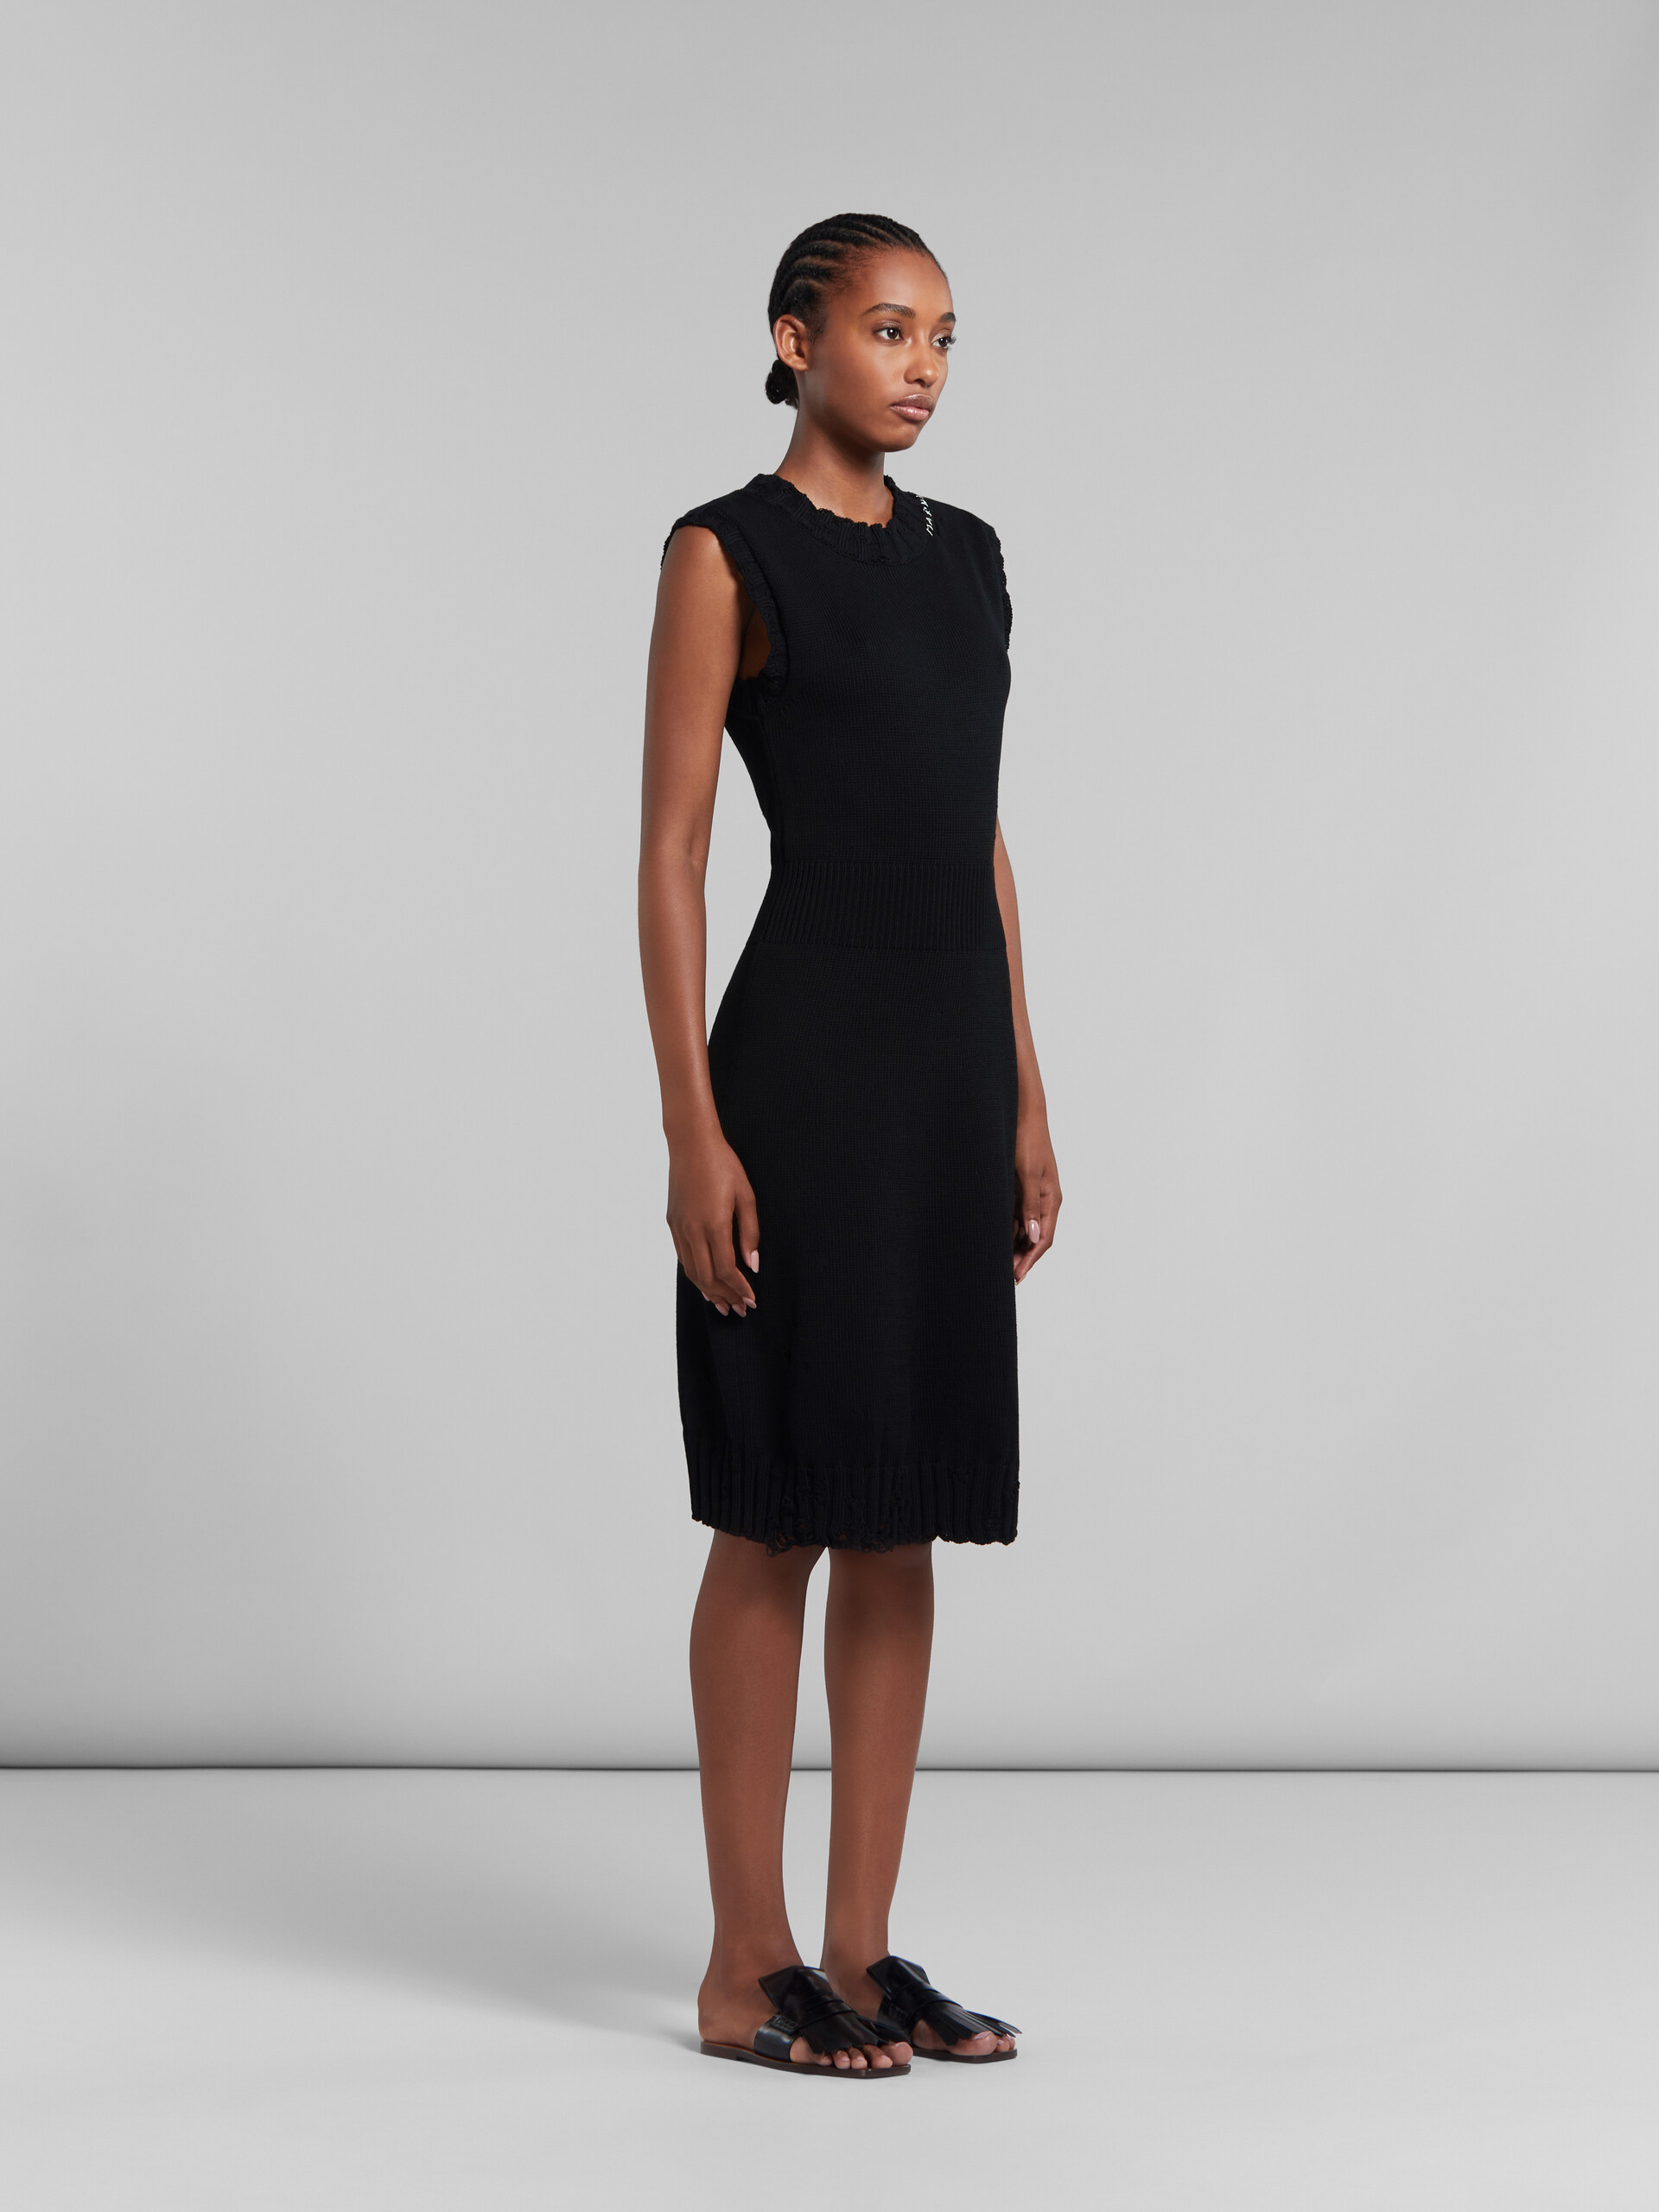 흐트러진 스타일의 블랙 코튼 니트 드레스 - 드레스 - Image 6